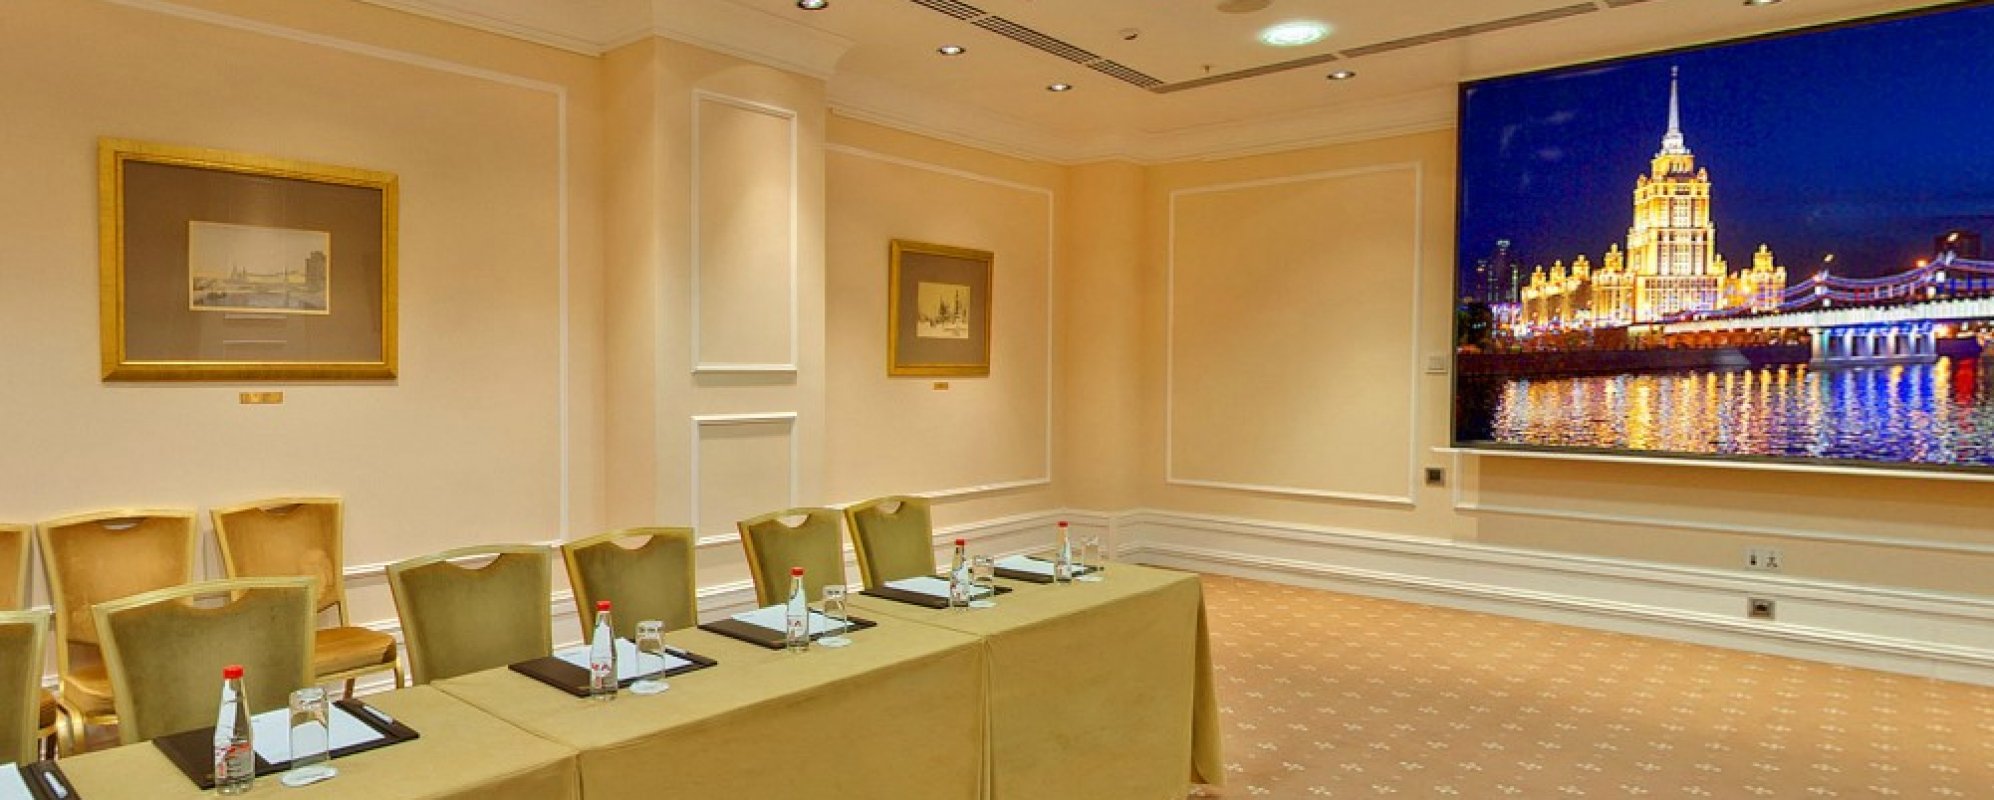 Фотографии комнаты для переговоров Лето